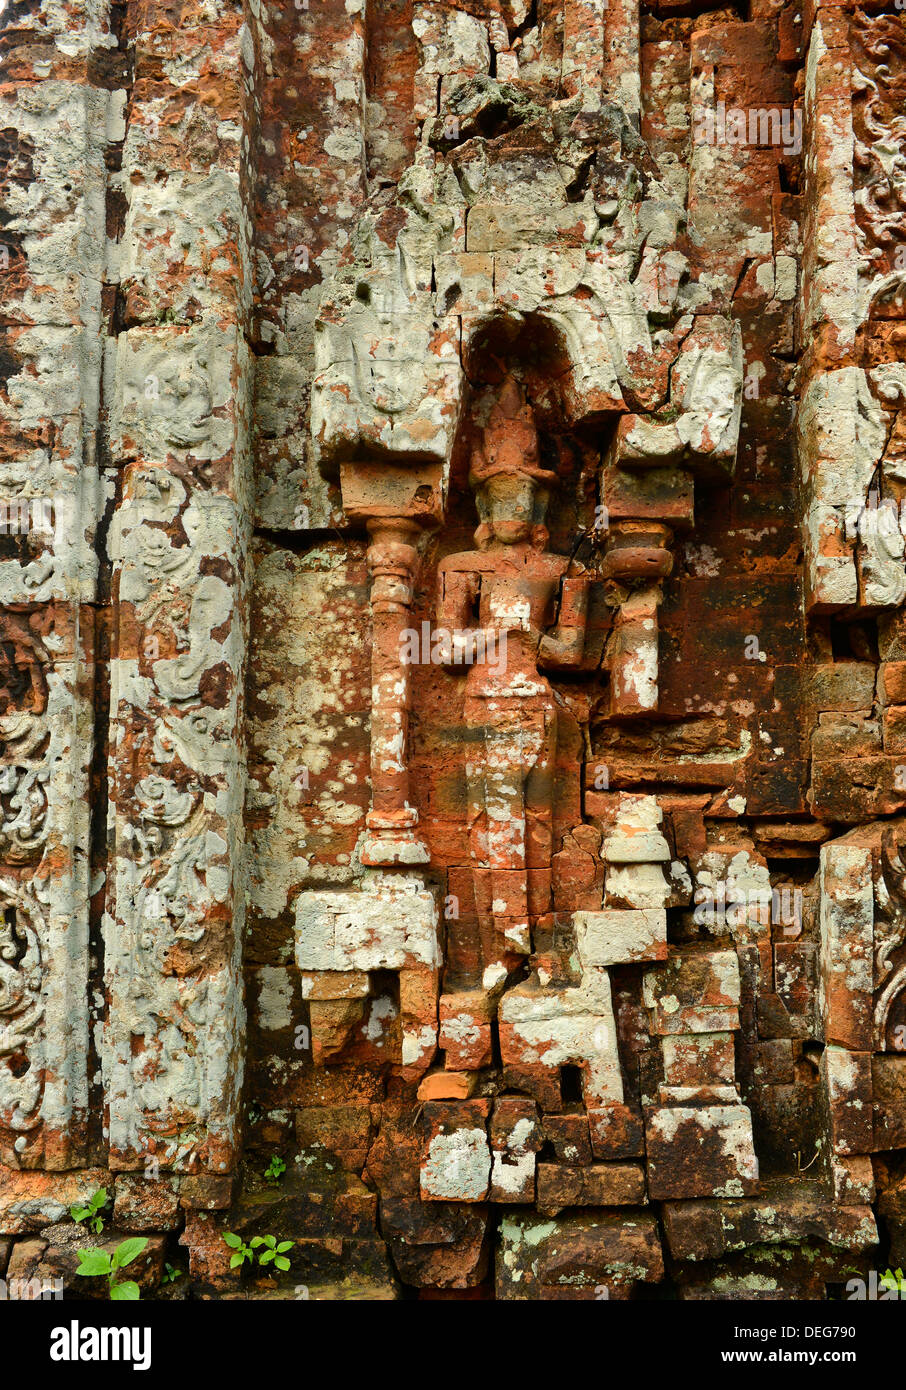 Détail de Temple 5B, de l'art Cham, mon fils, Site du patrimoine mondial de l'UNESCO, le Vietnam, l'Indochine, l'Asie du Sud-Est, Asie Banque D'Images